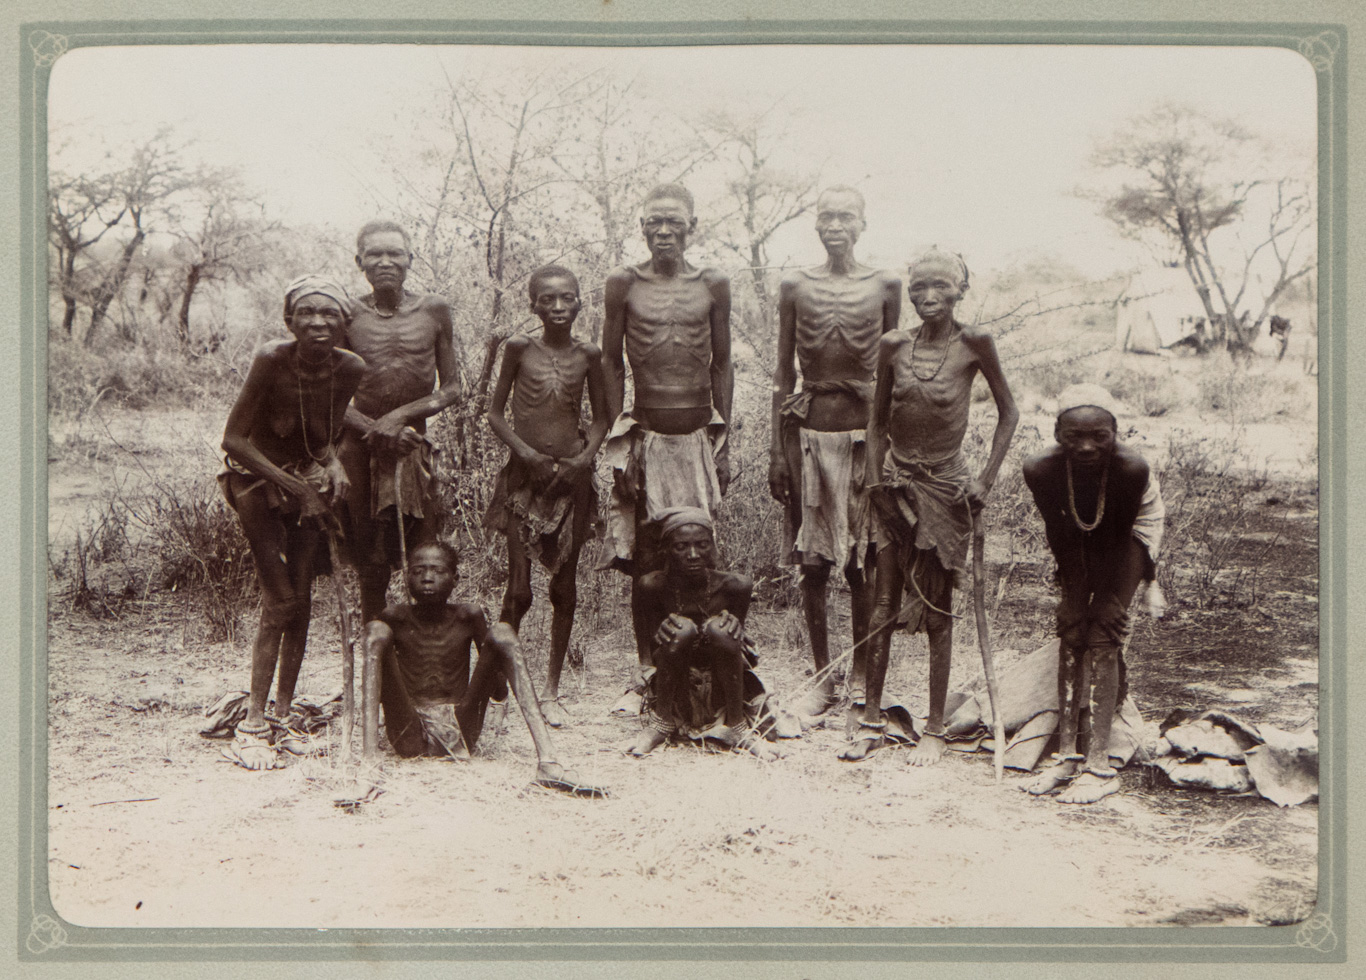 Una fotografía titulada “Hereros capturados”, tomada alrededor de 1904 por colonos alemanes en Namibia. Foto | Museo Histórico Alemán